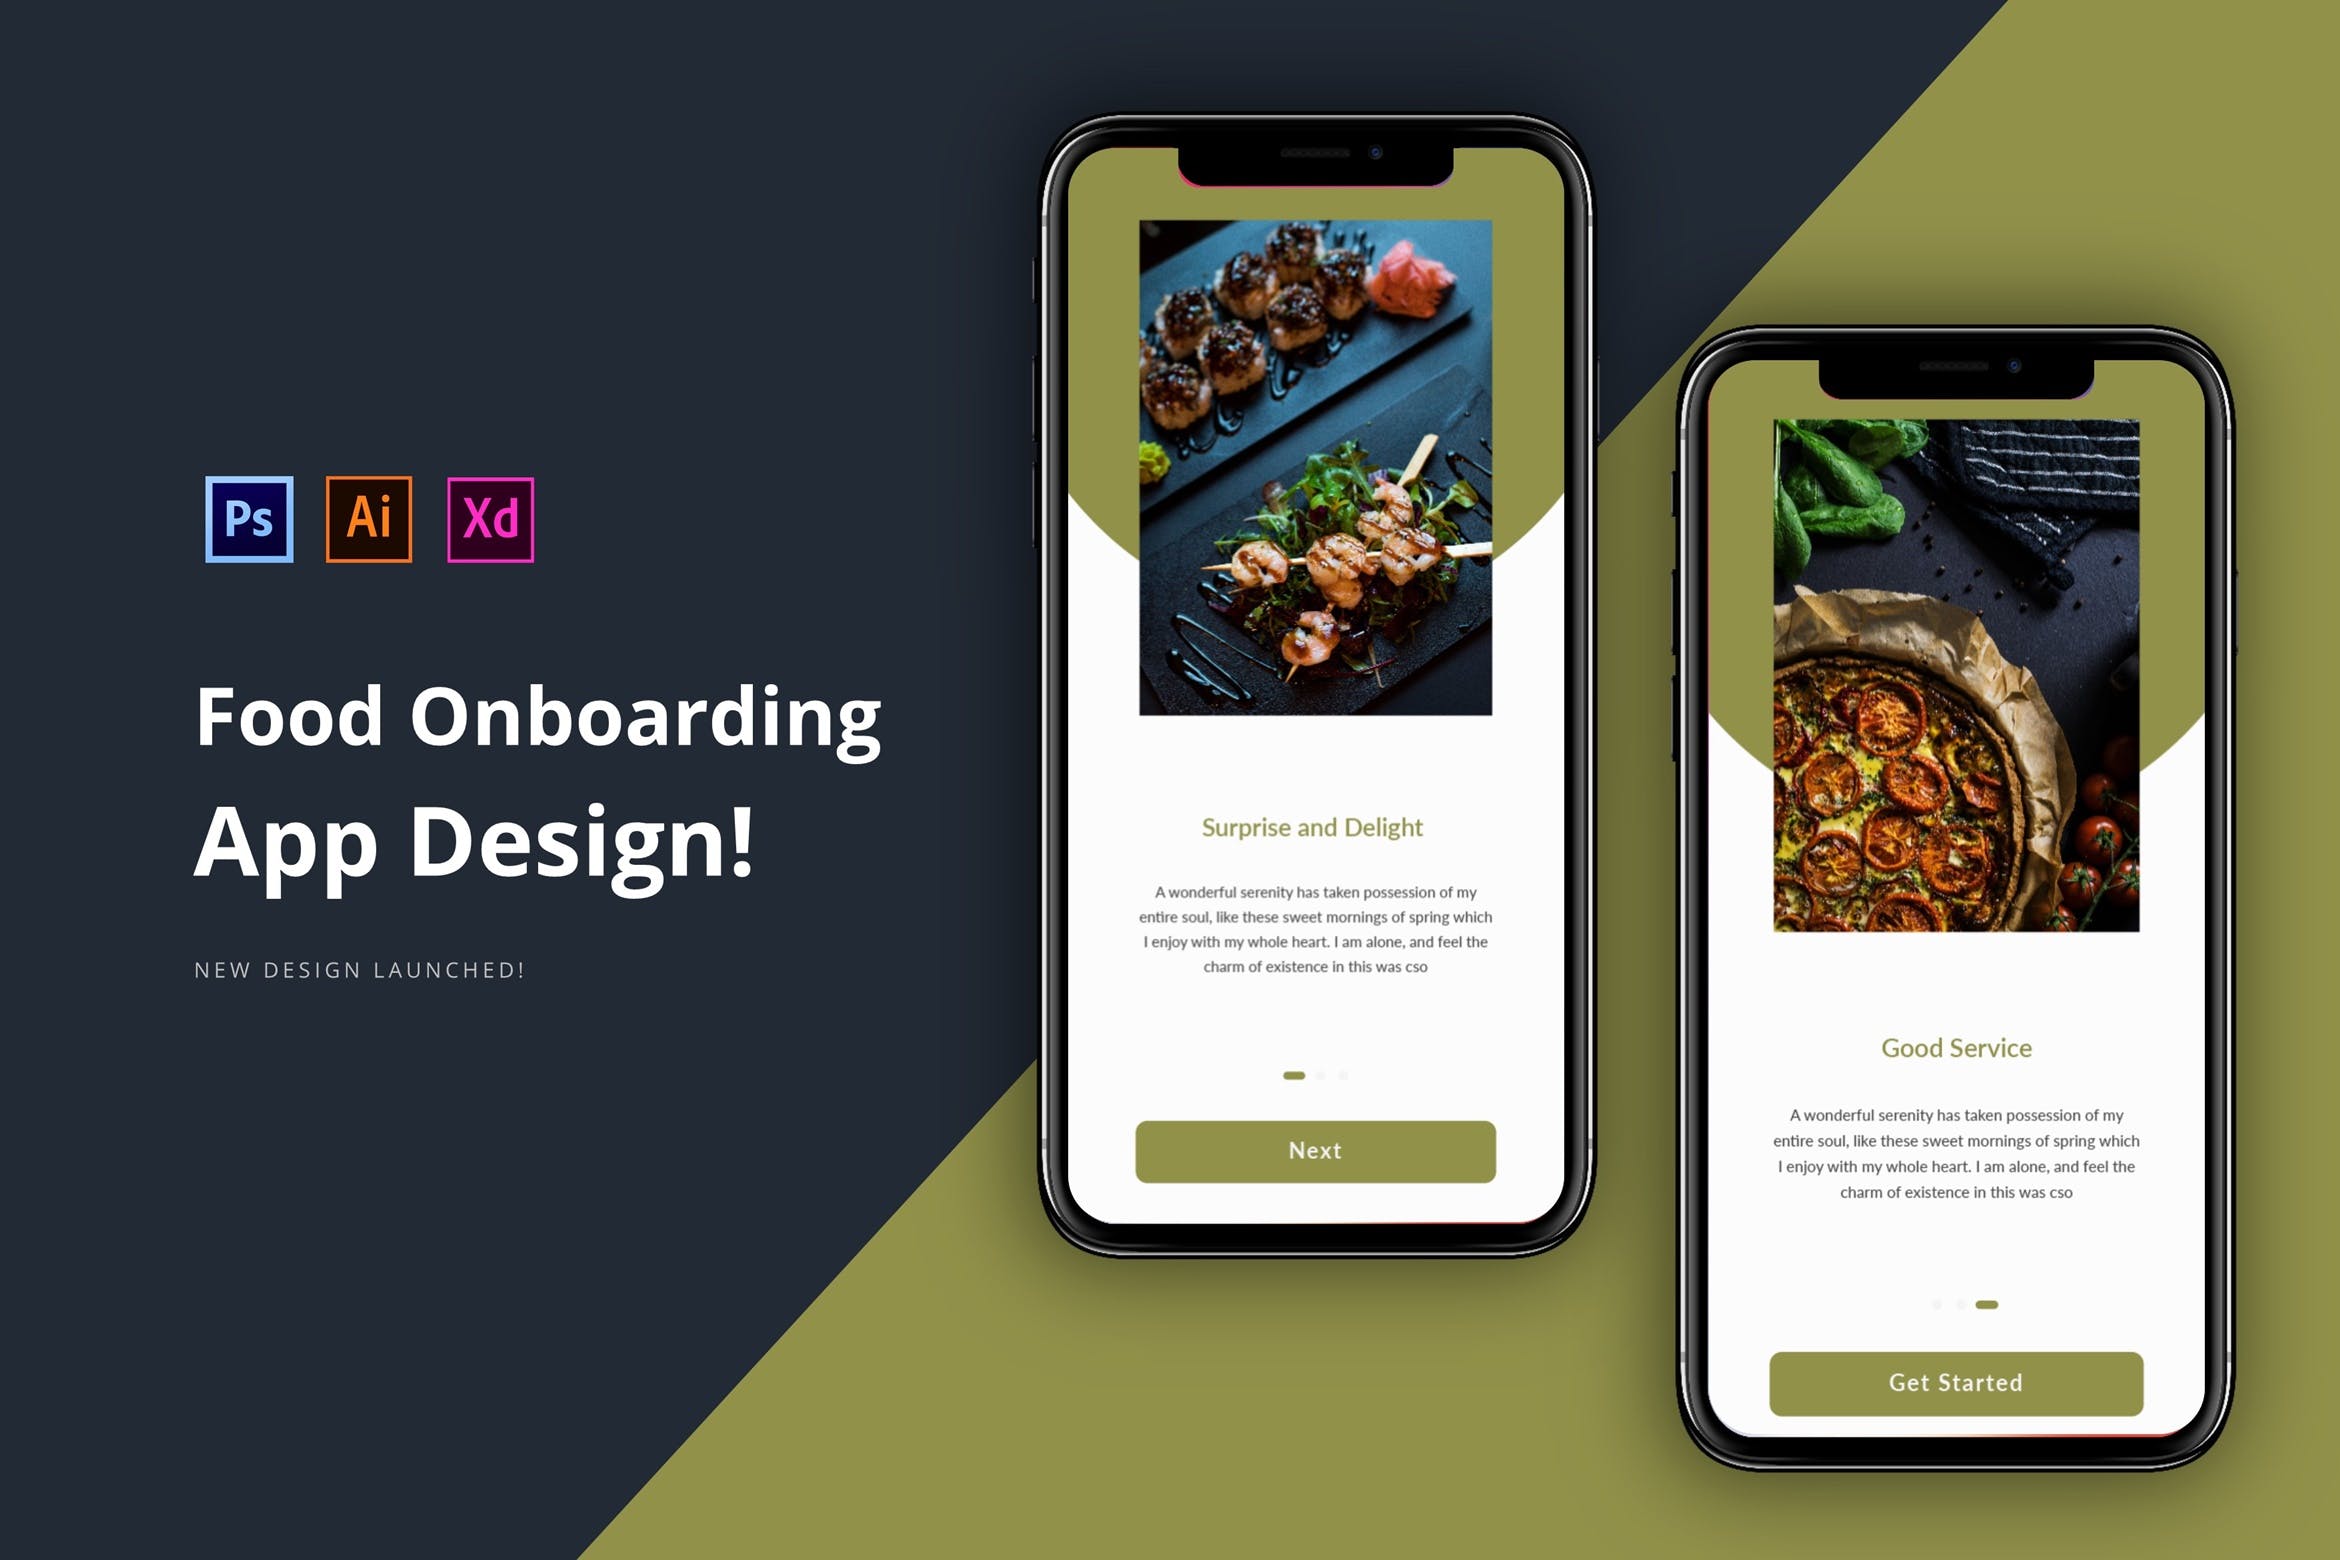 美食主题APP应用引导界面设计16图库精选模板 Onboarding App Design插图